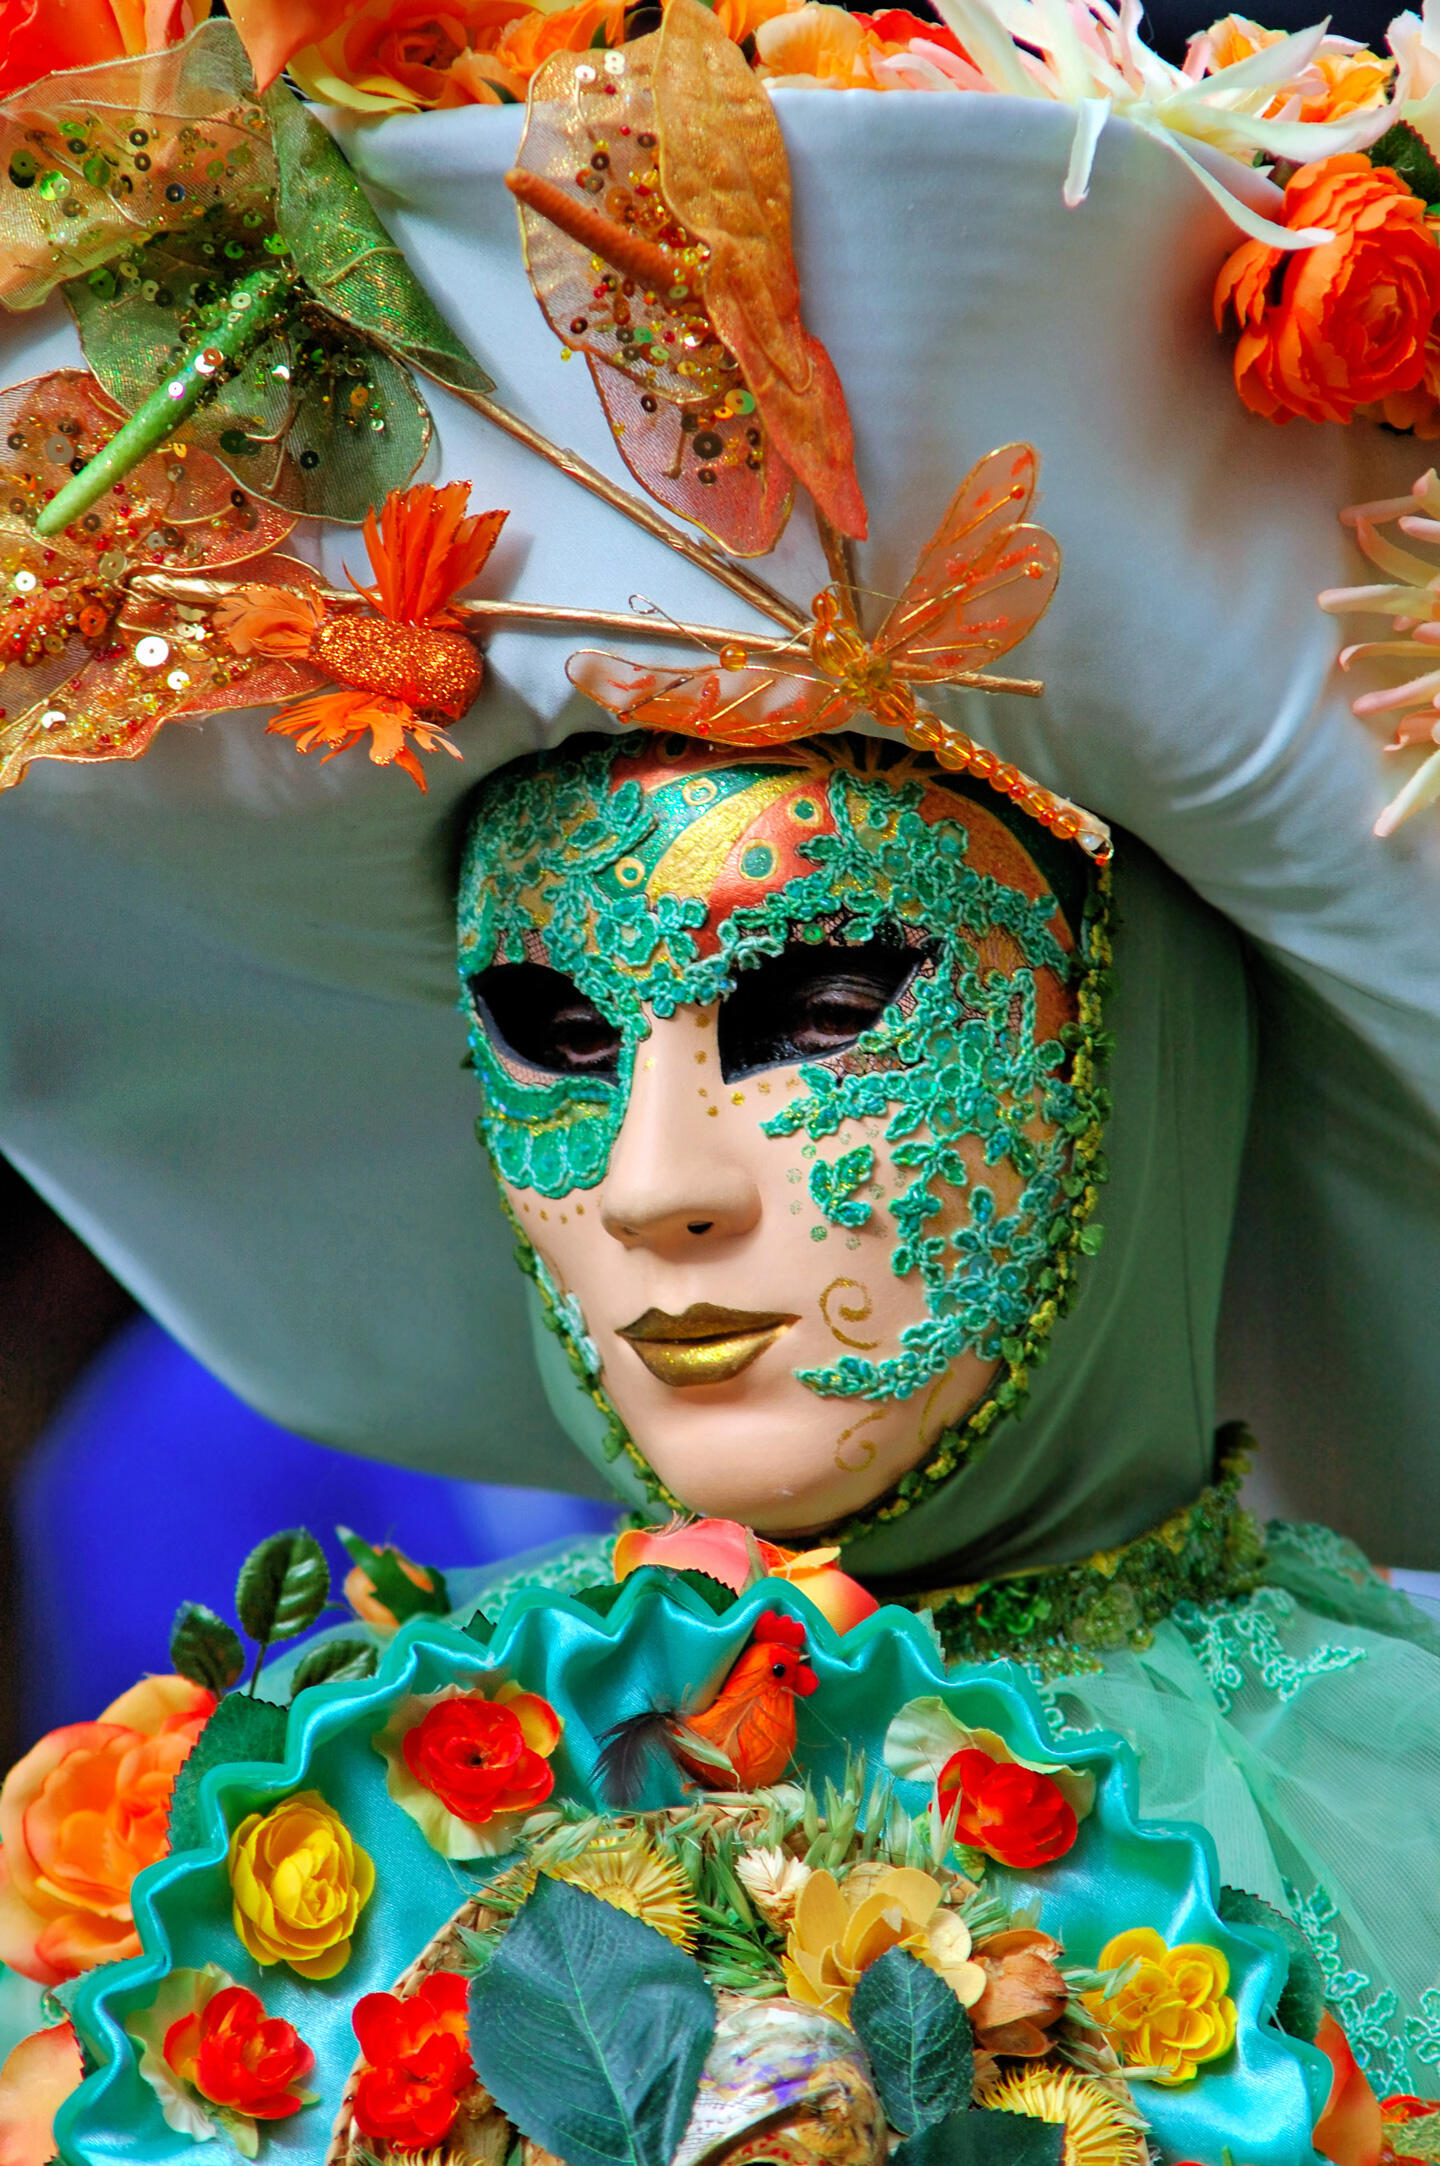 Participante con máscara ornada verde y dorada adornada con lentejuelas y decoraciones florales en La Fête des Vendanges de Montmartre.